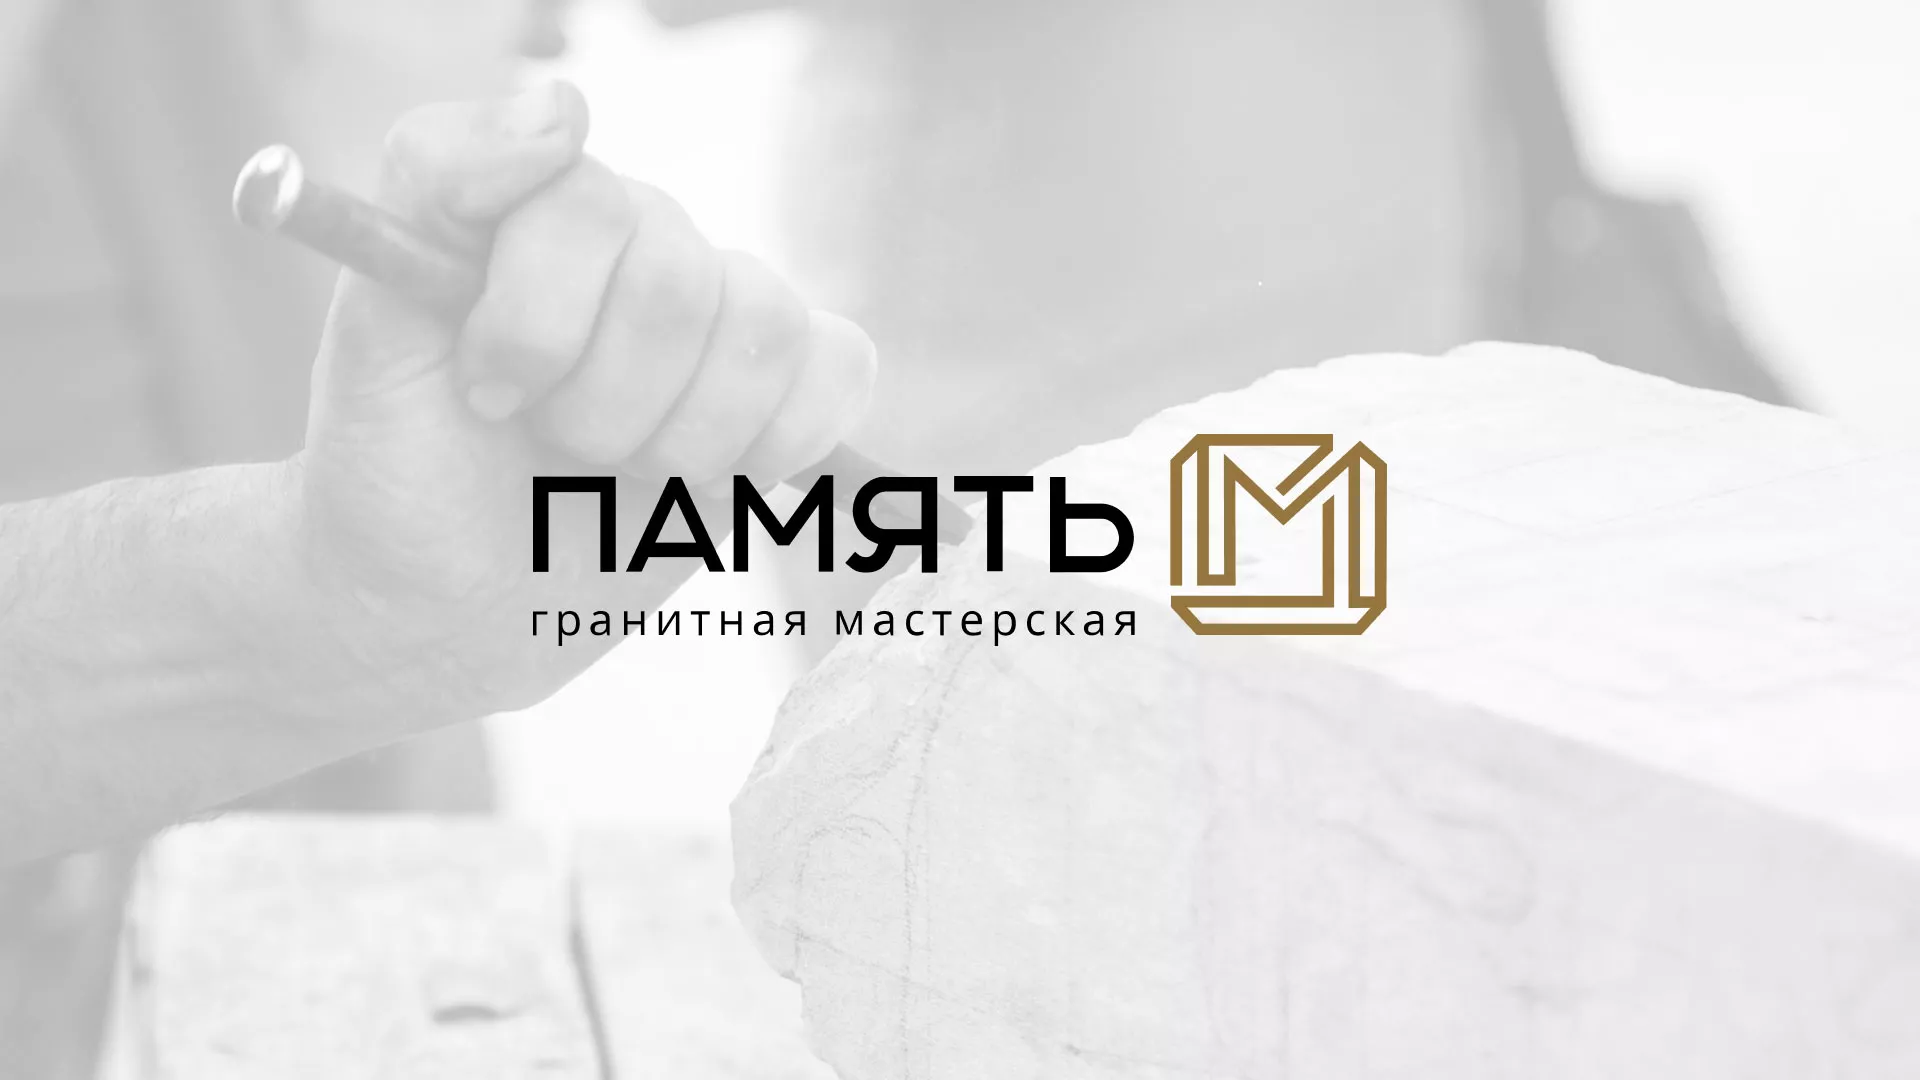 Разработка логотипа и сайта компании «Память-М» в Грозном